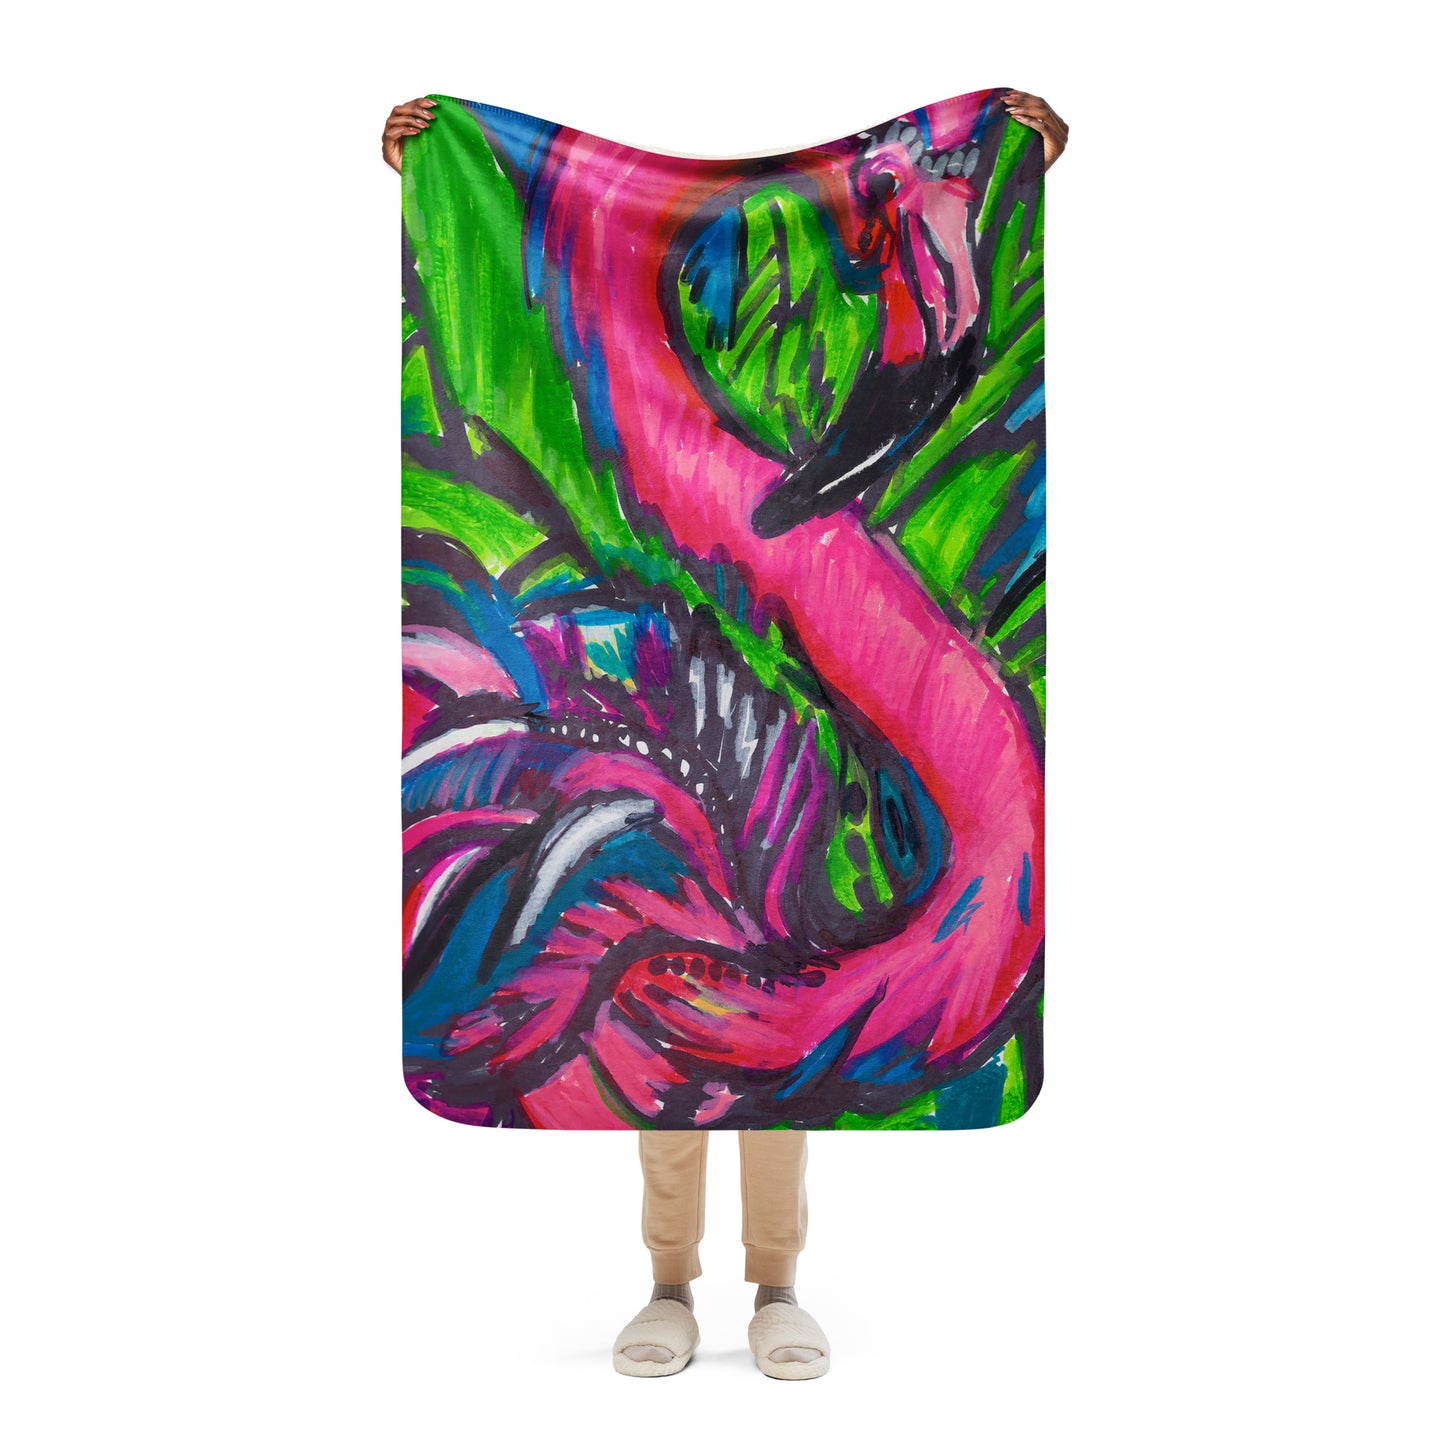 Flamingo - Sherpa blanket 37x57" (93.98x144.78cm)